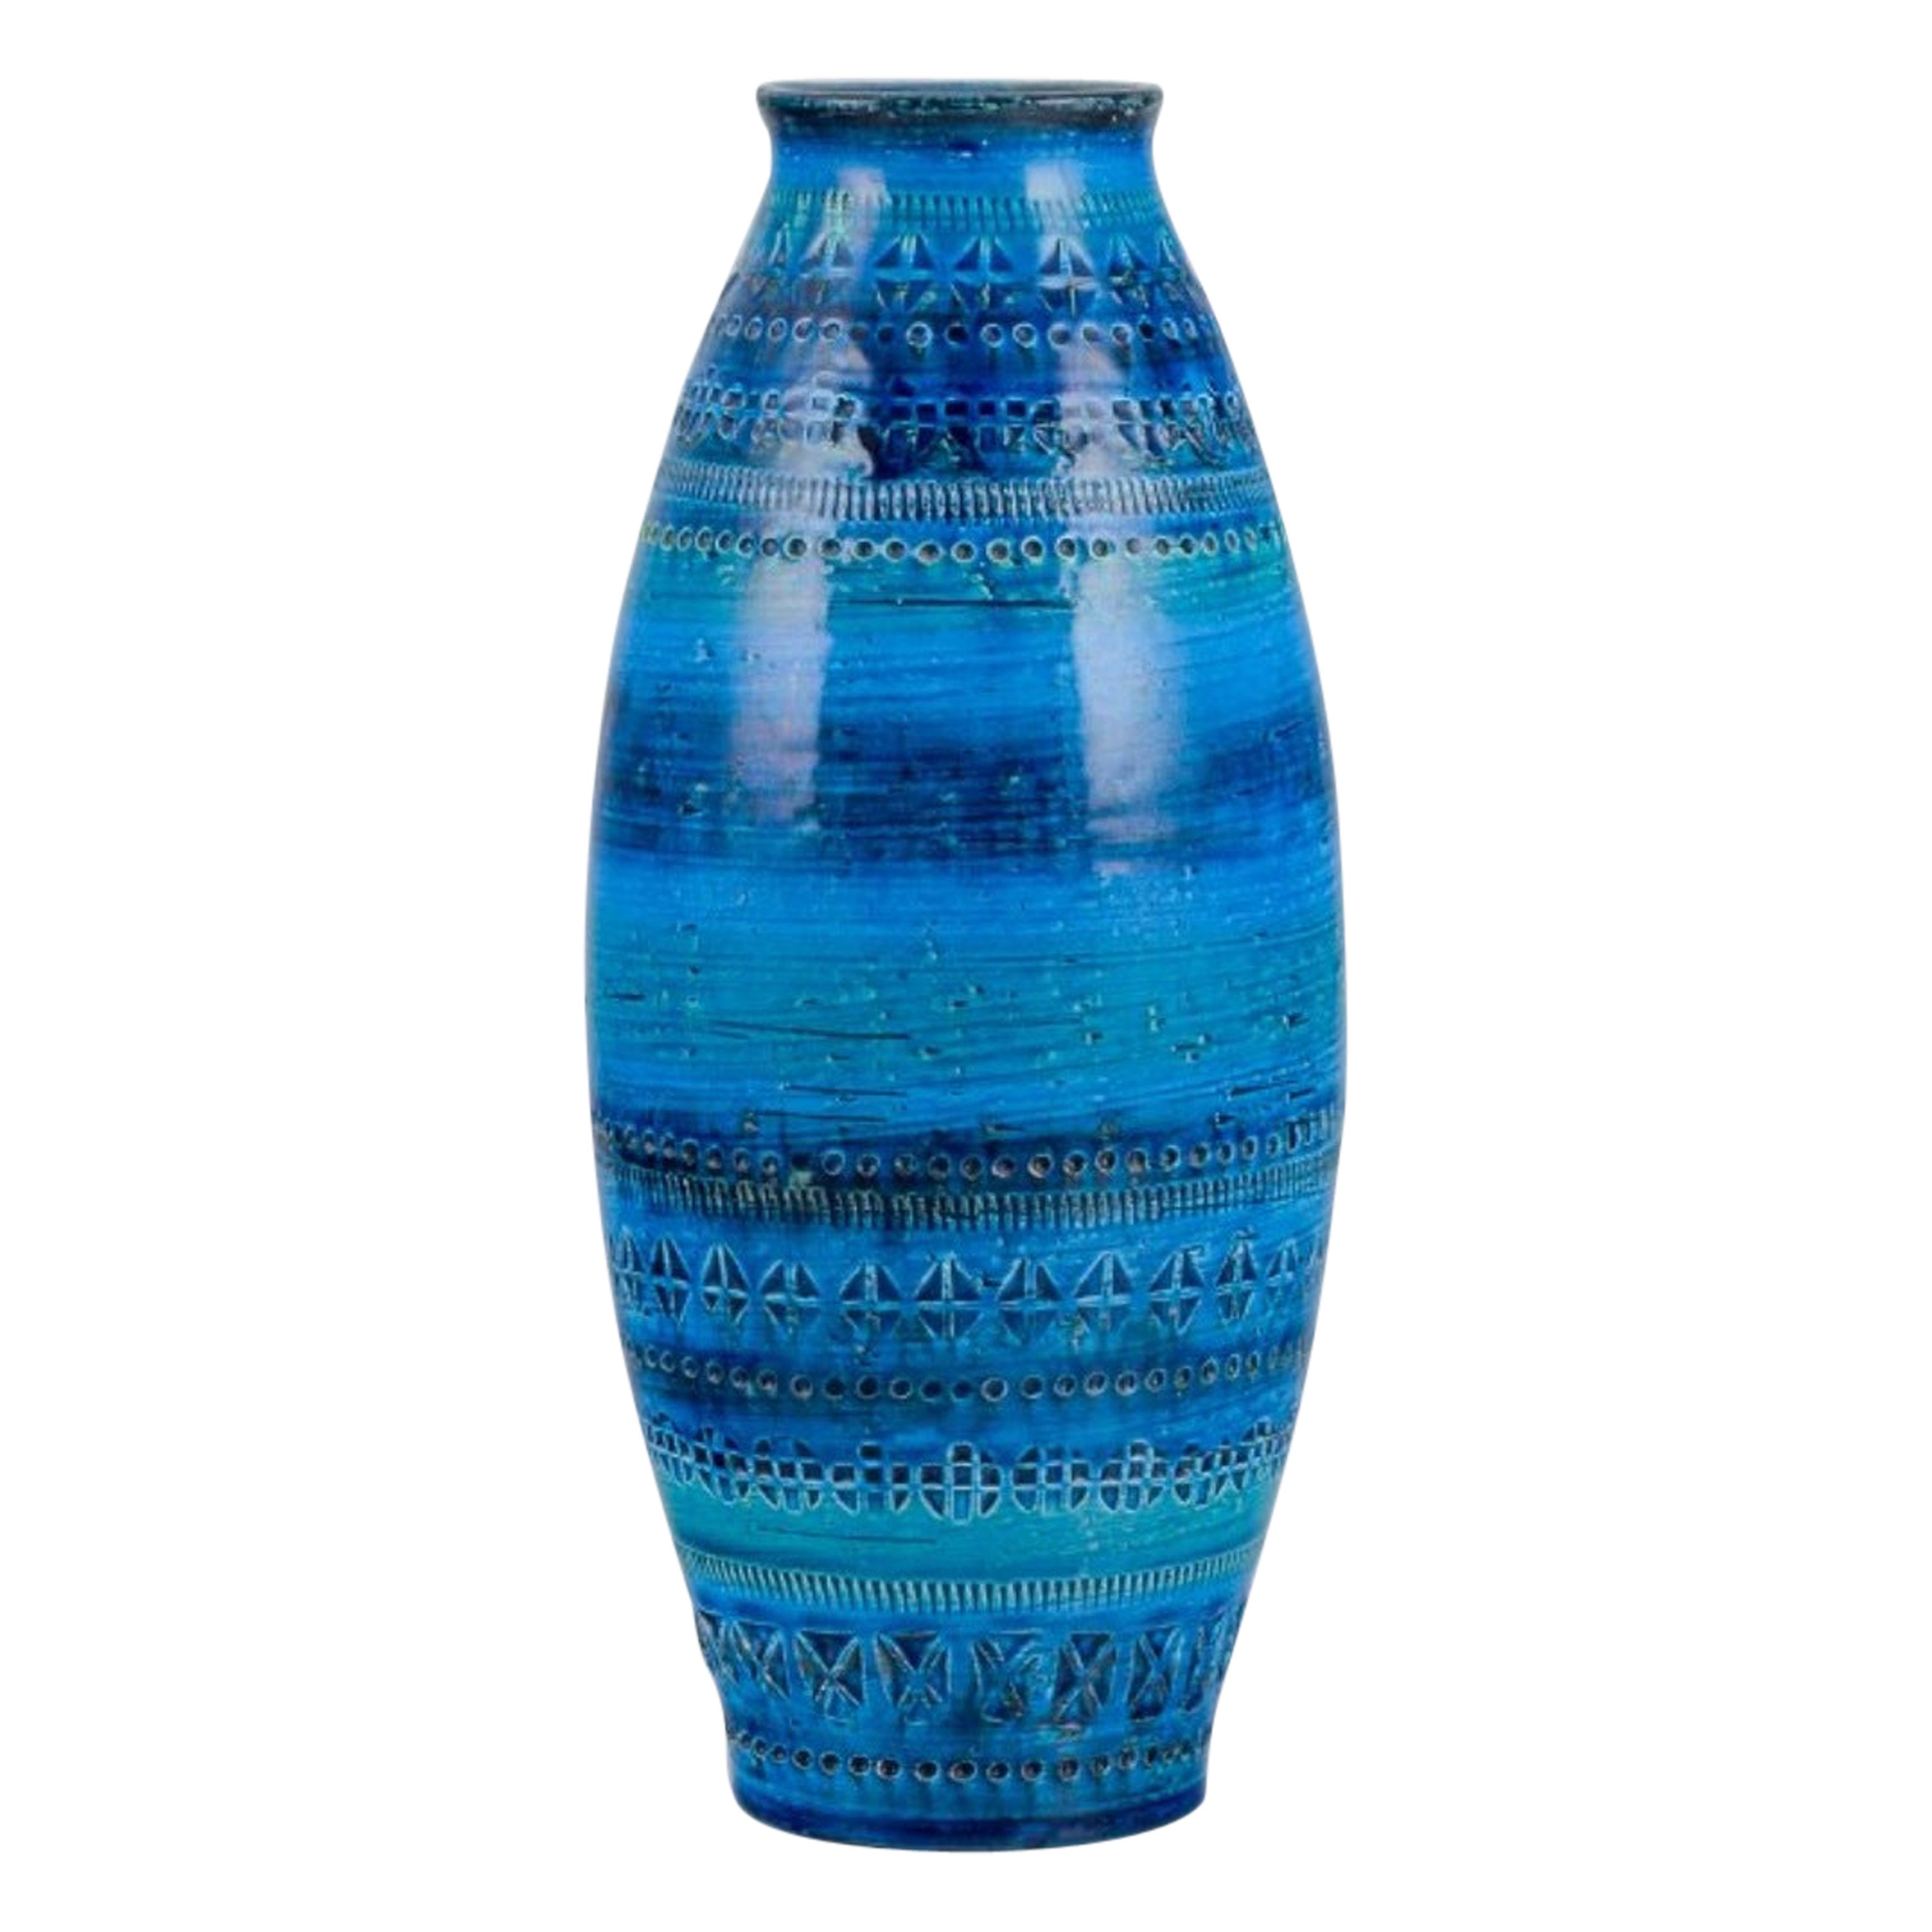 Aldo Londi for Bitossi, Italy. Large ceramic vase with azure blue glaze. For Sale